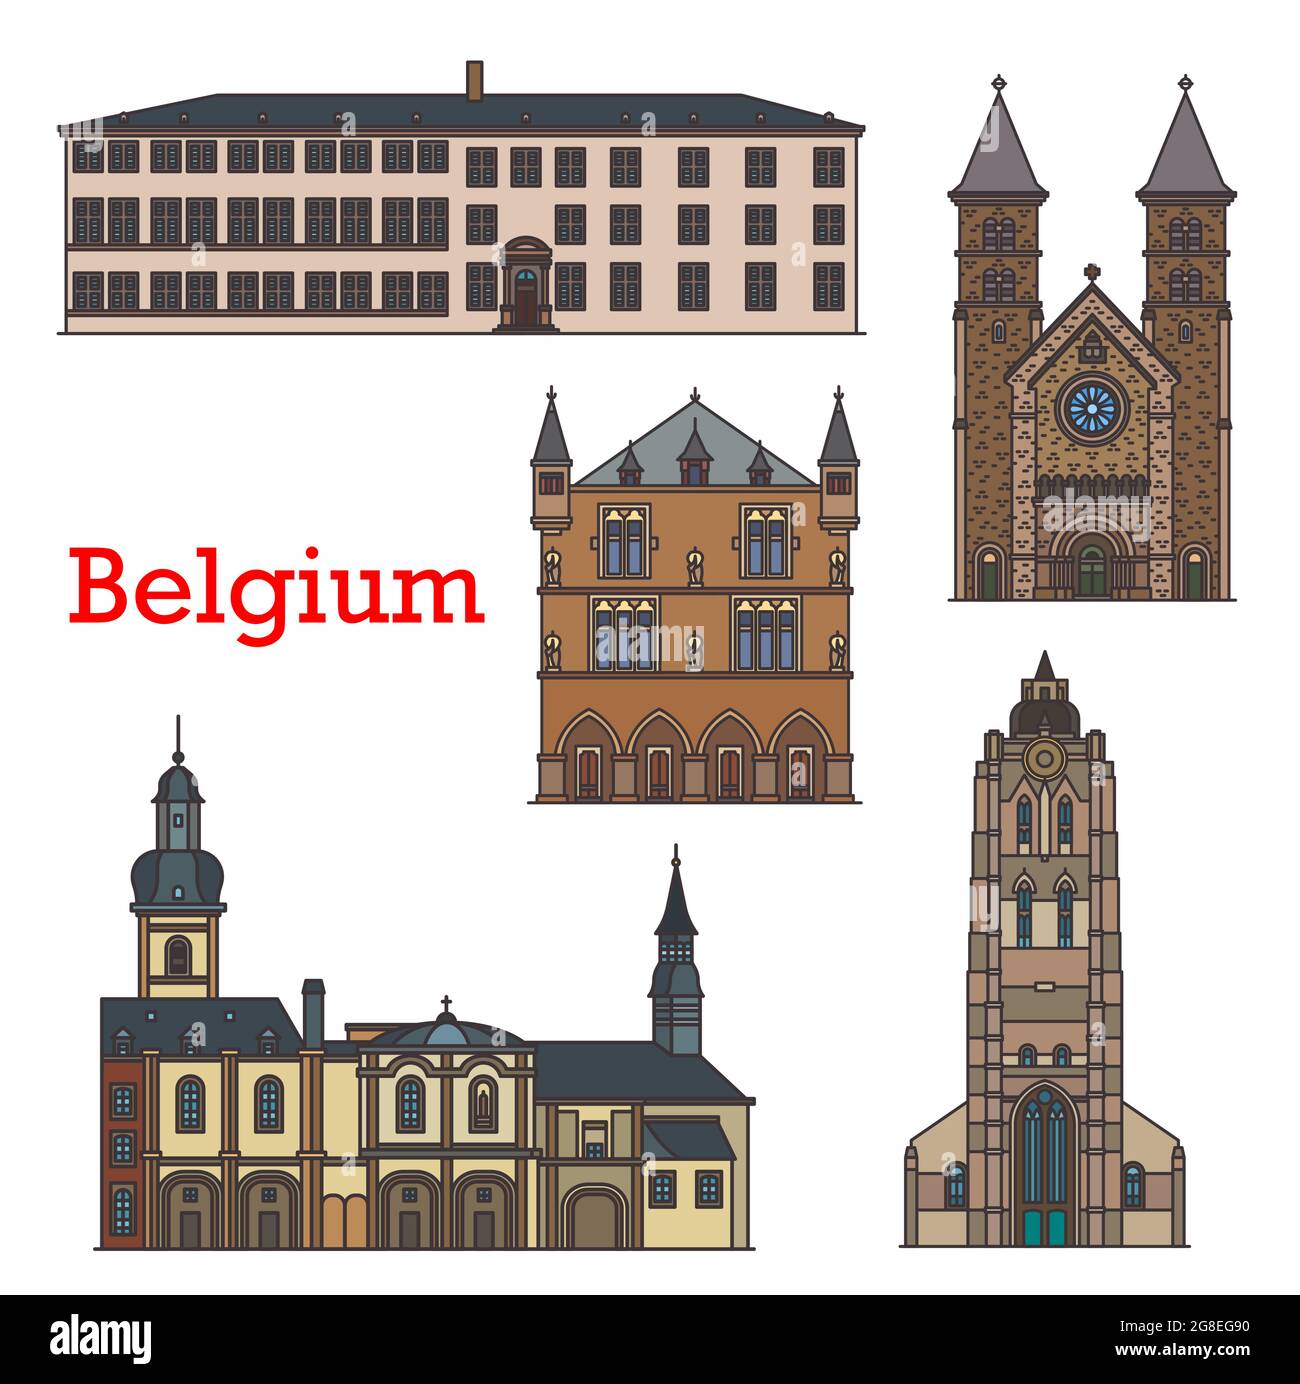 Luoghi di interesse del Lussemburgo, edifici architettonici, visite turistiche in viaggio vettoriale. Basilica di San Willibrord a Echternach, Granducato e Municipio Stadhau Illustrazione Vettoriale